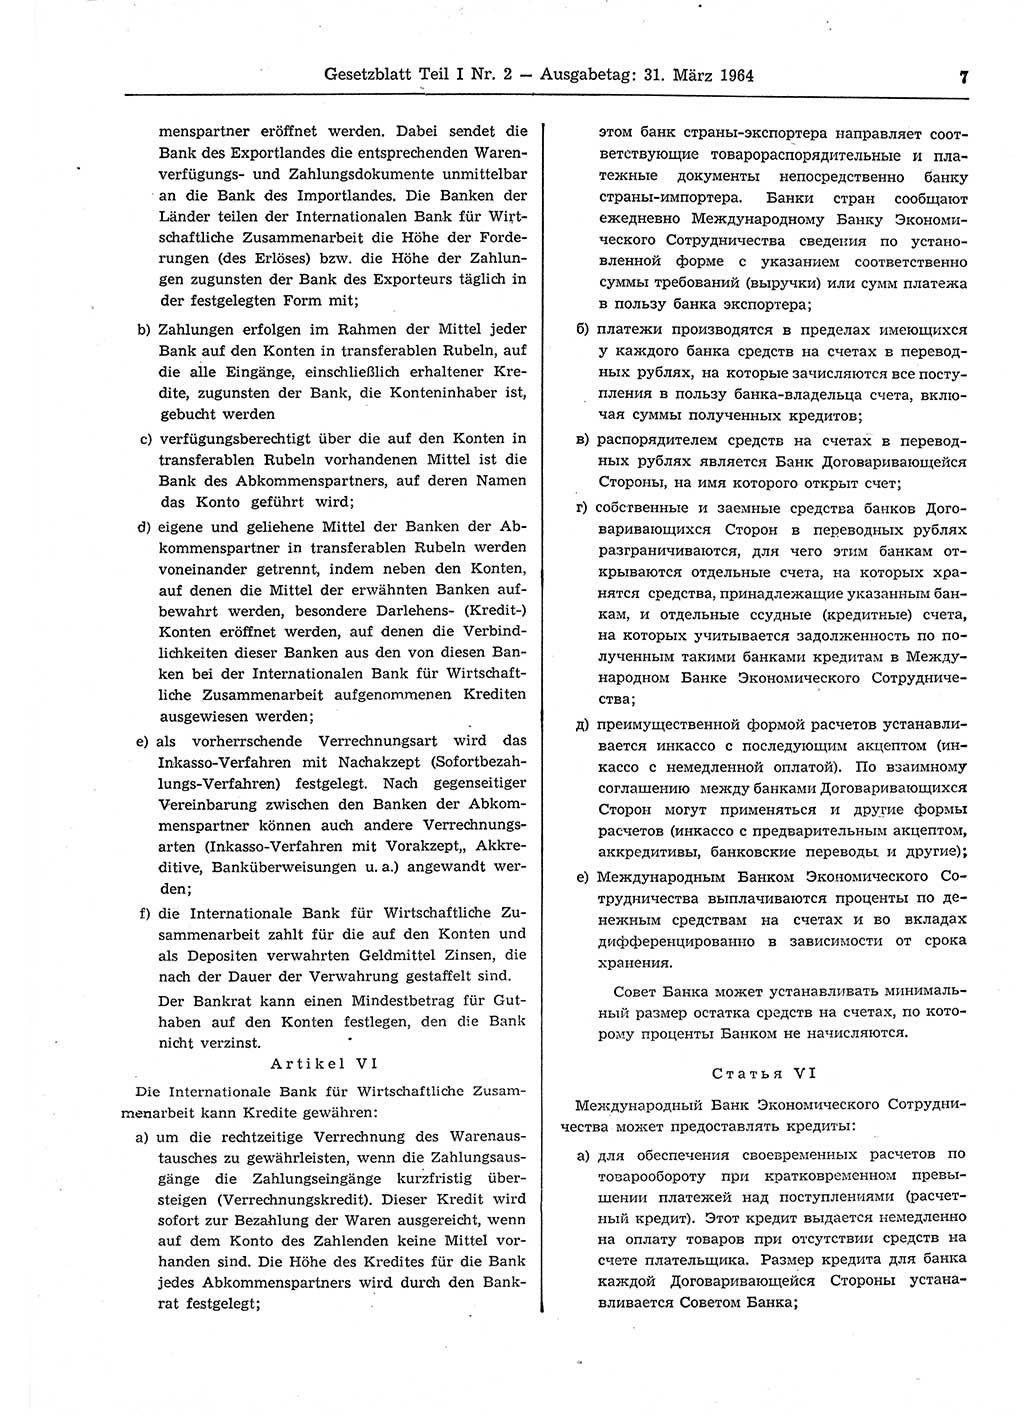 Gesetzblatt (GBl.) der Deutschen Demokratischen Republik (DDR) Teil Ⅰ 1964, Seite 7 (GBl. DDR Ⅰ 1964, S. 7)